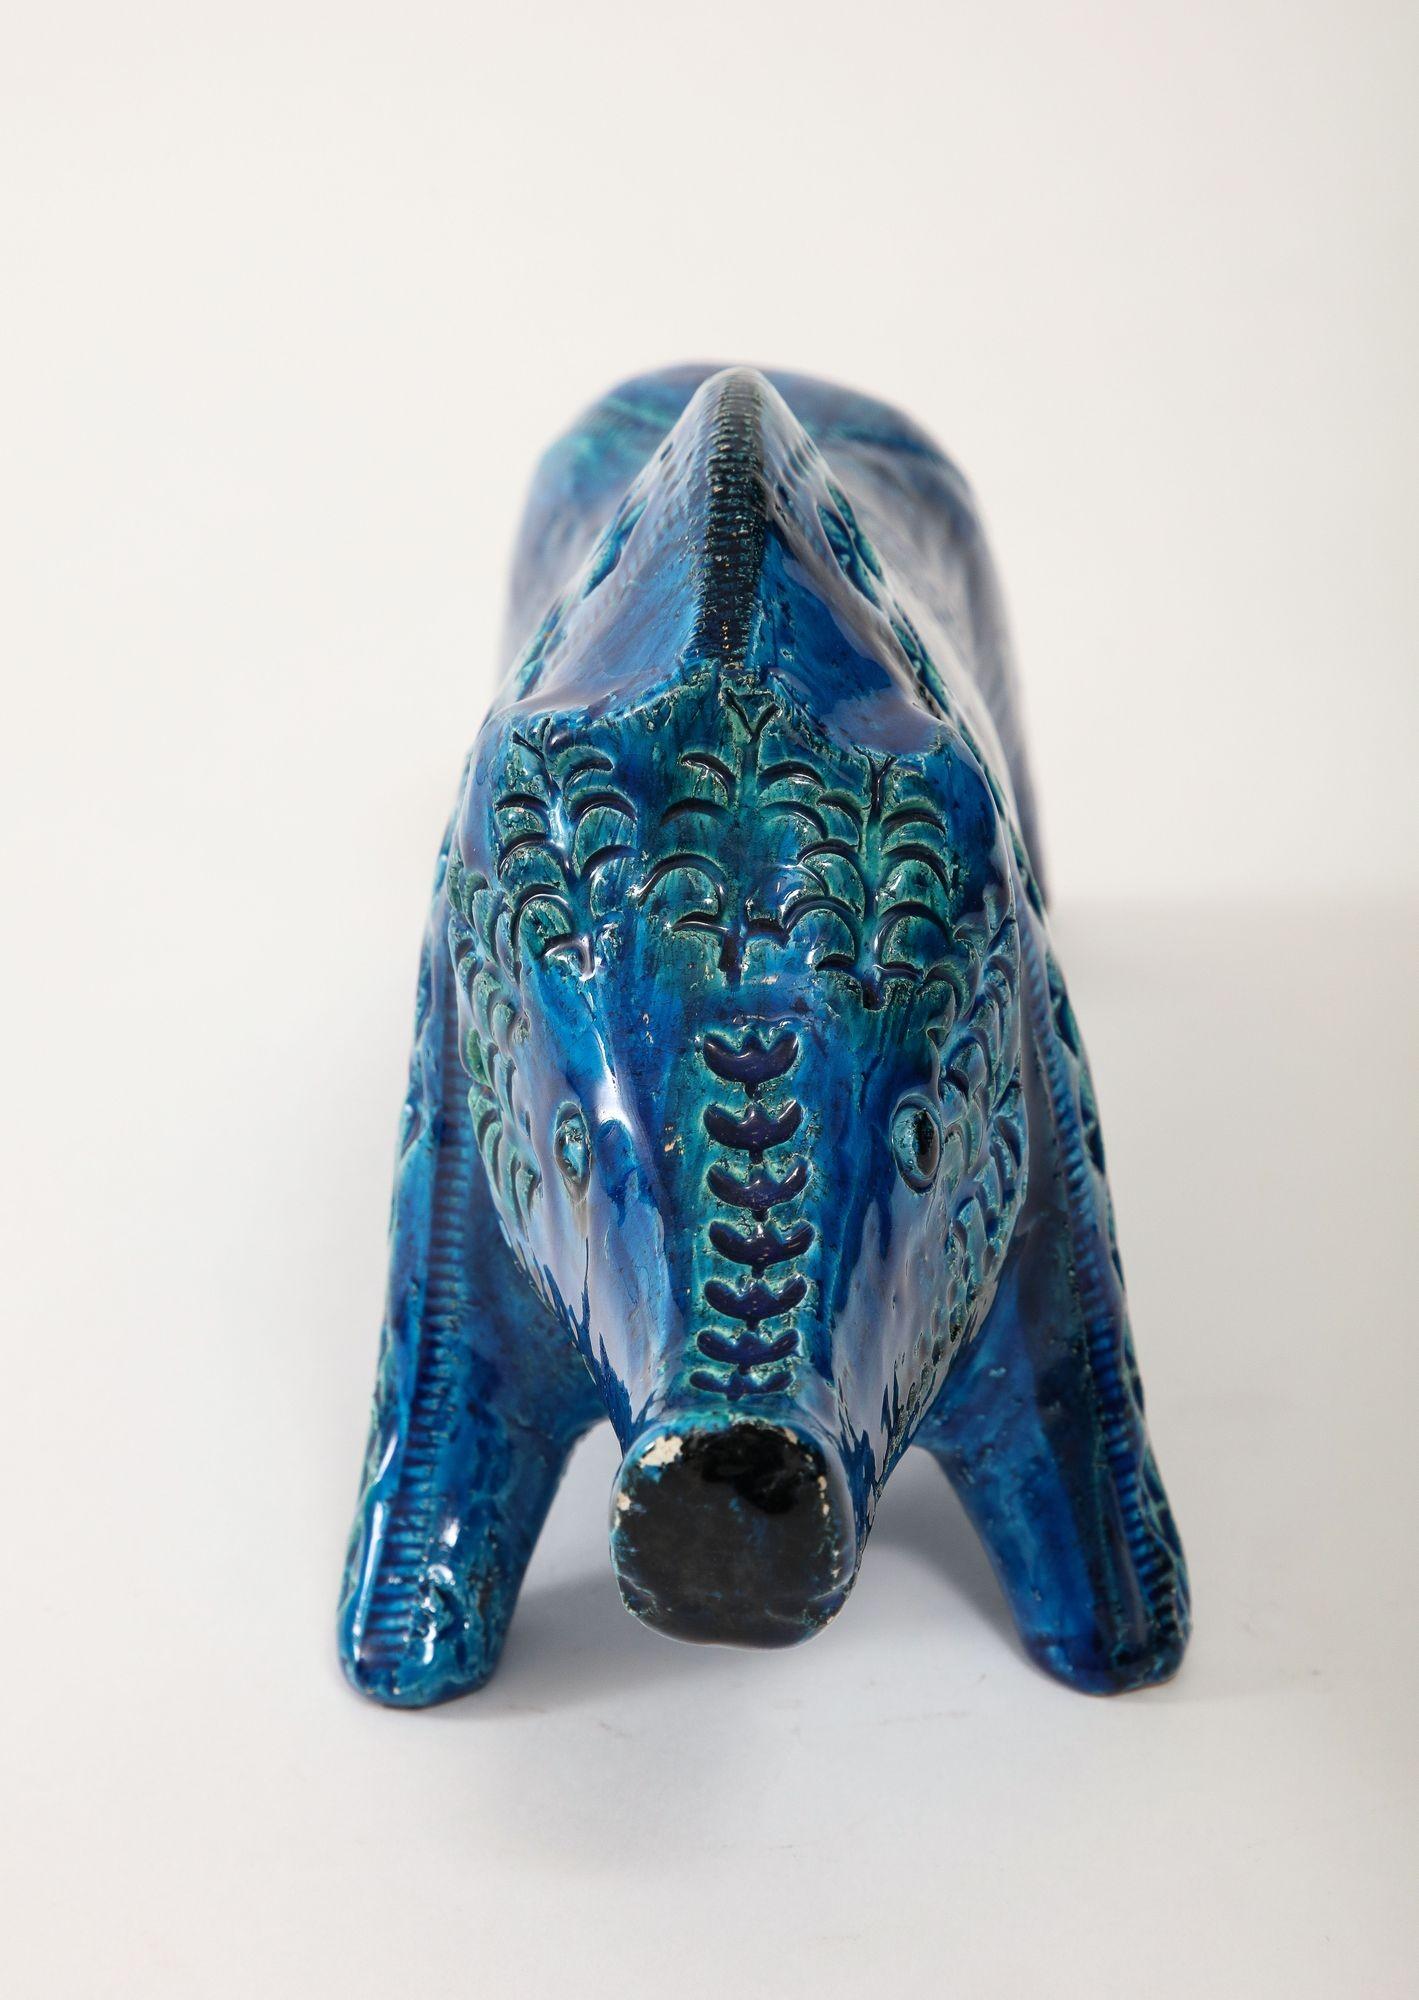 Ceramic Boar by Aldo Londi for Bitossi in 'Rimini blue' Italy ca. 1960 For Sale 1